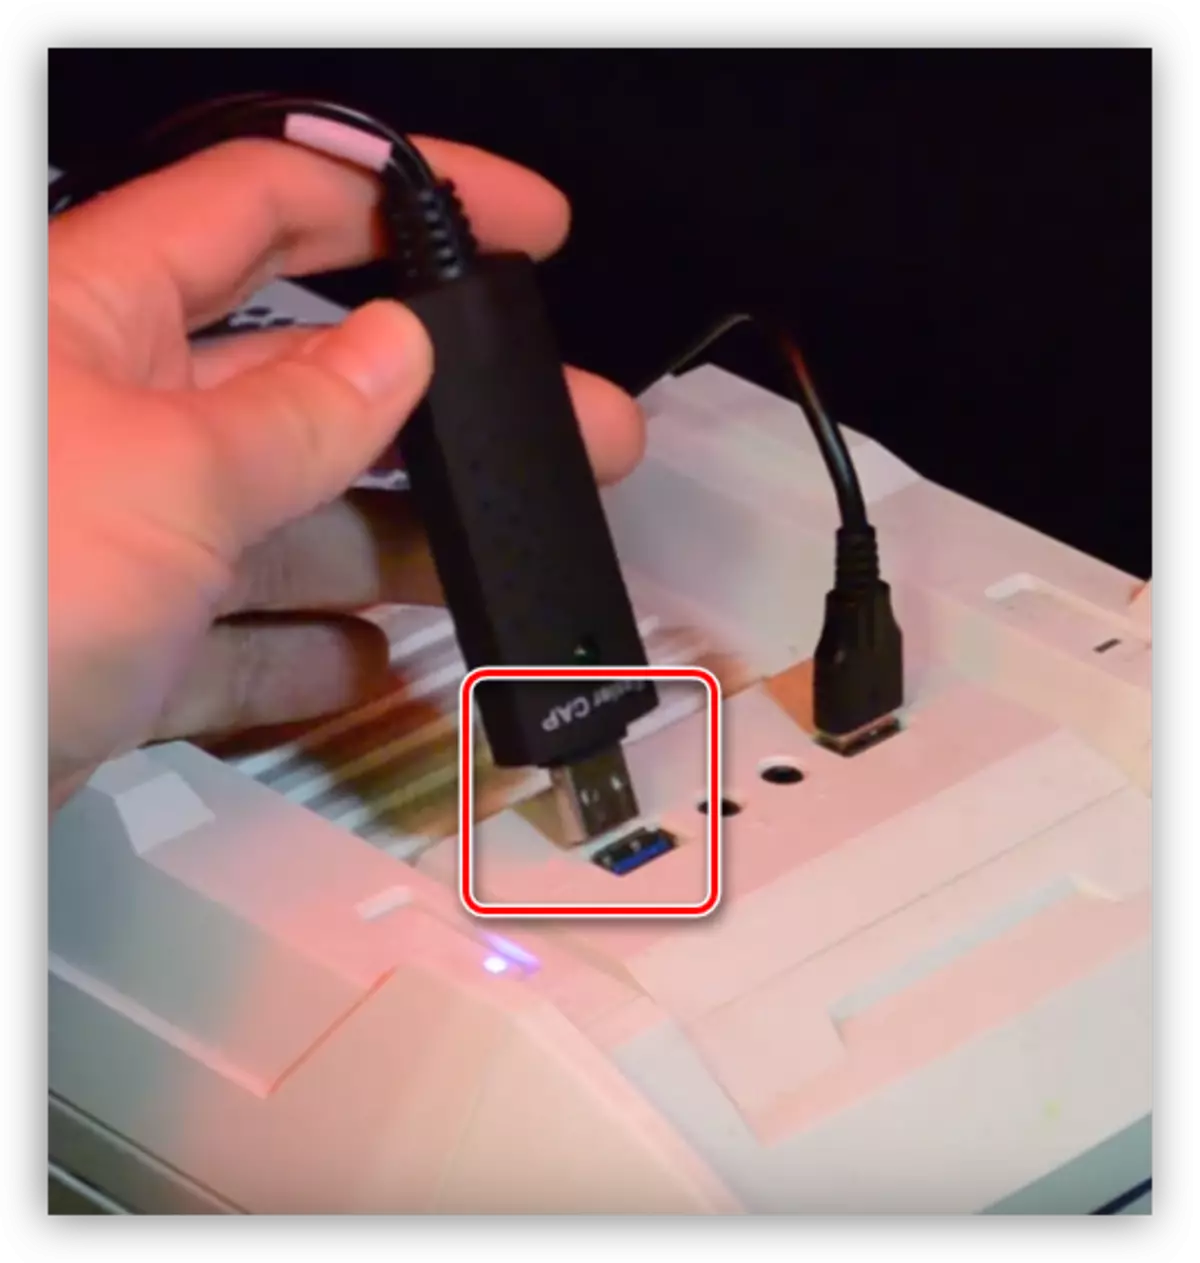 Videofelvevő eszköz csatlakoztatása a számítógép USB portjához